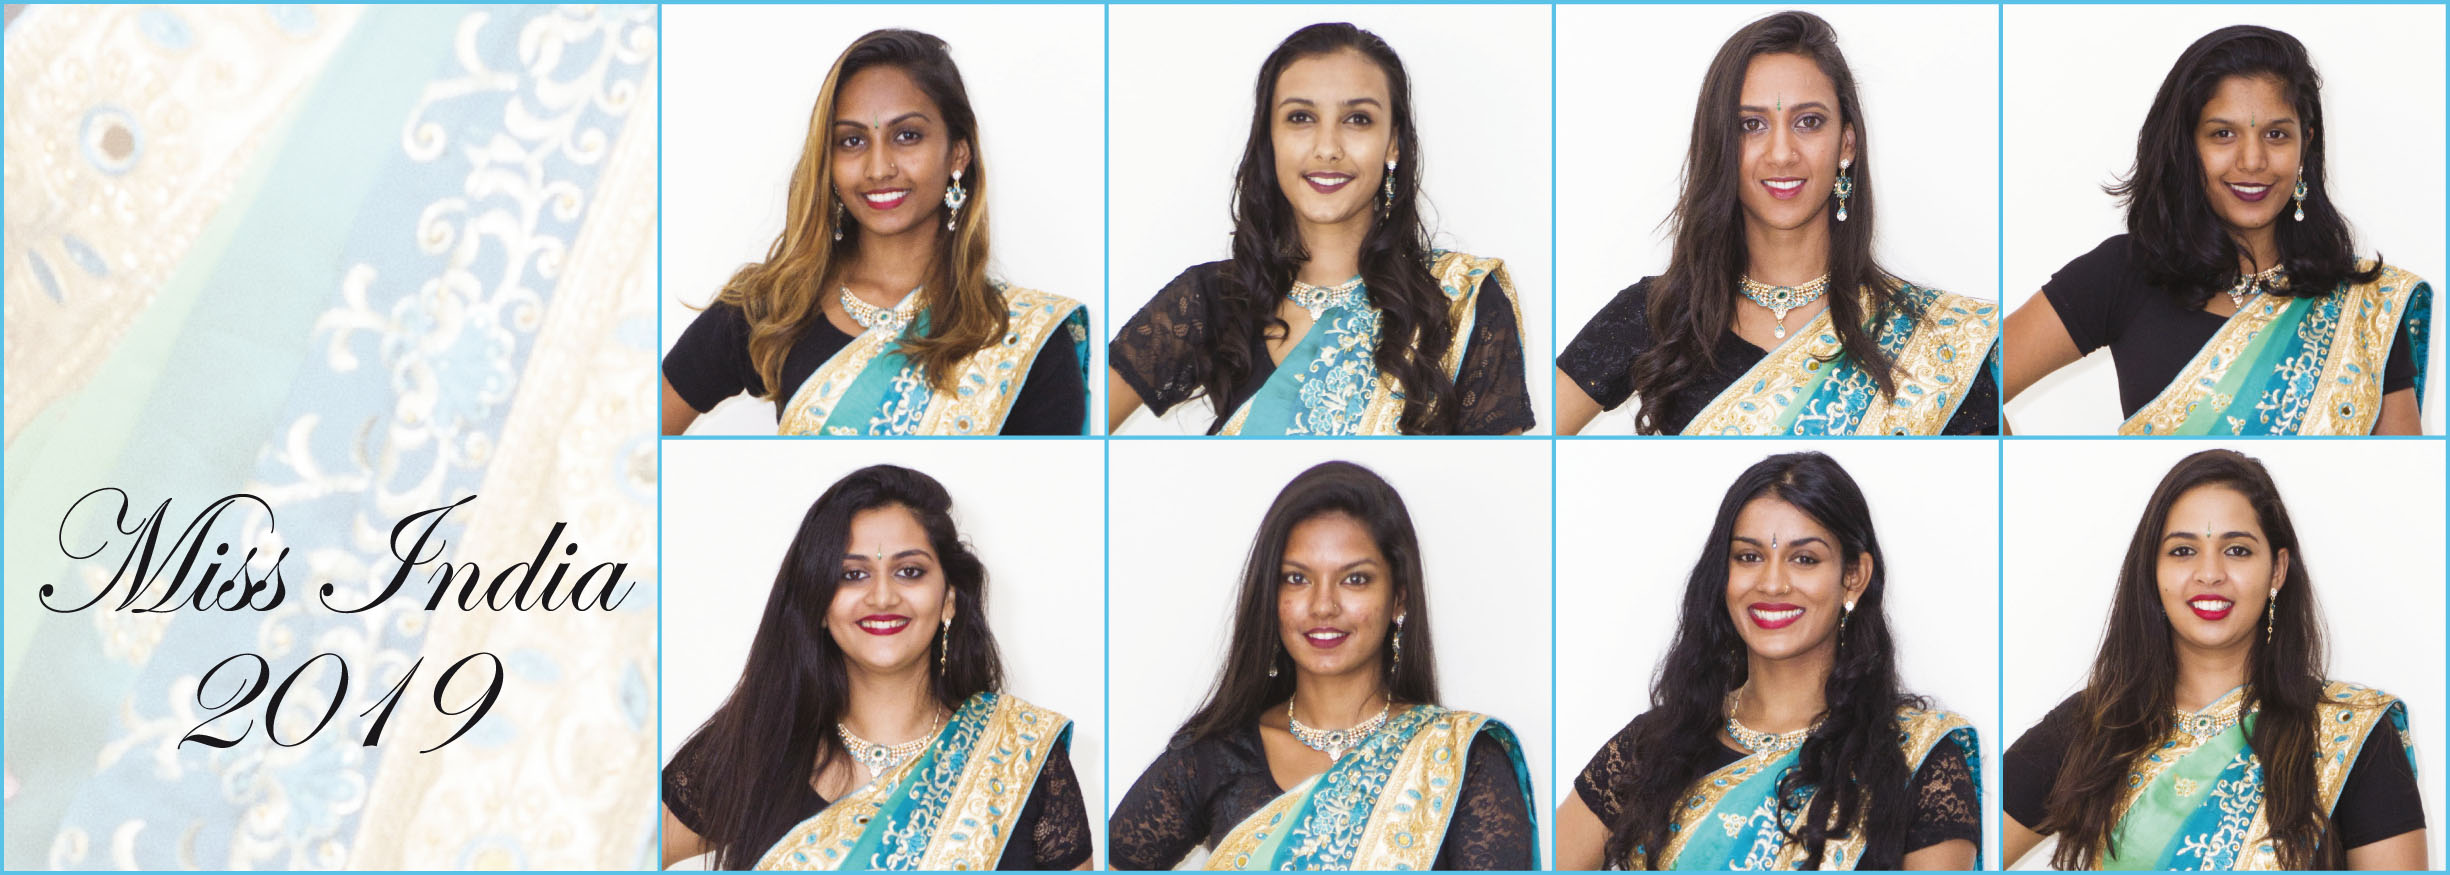 Miss India Réunion 2019: les 8 candidates